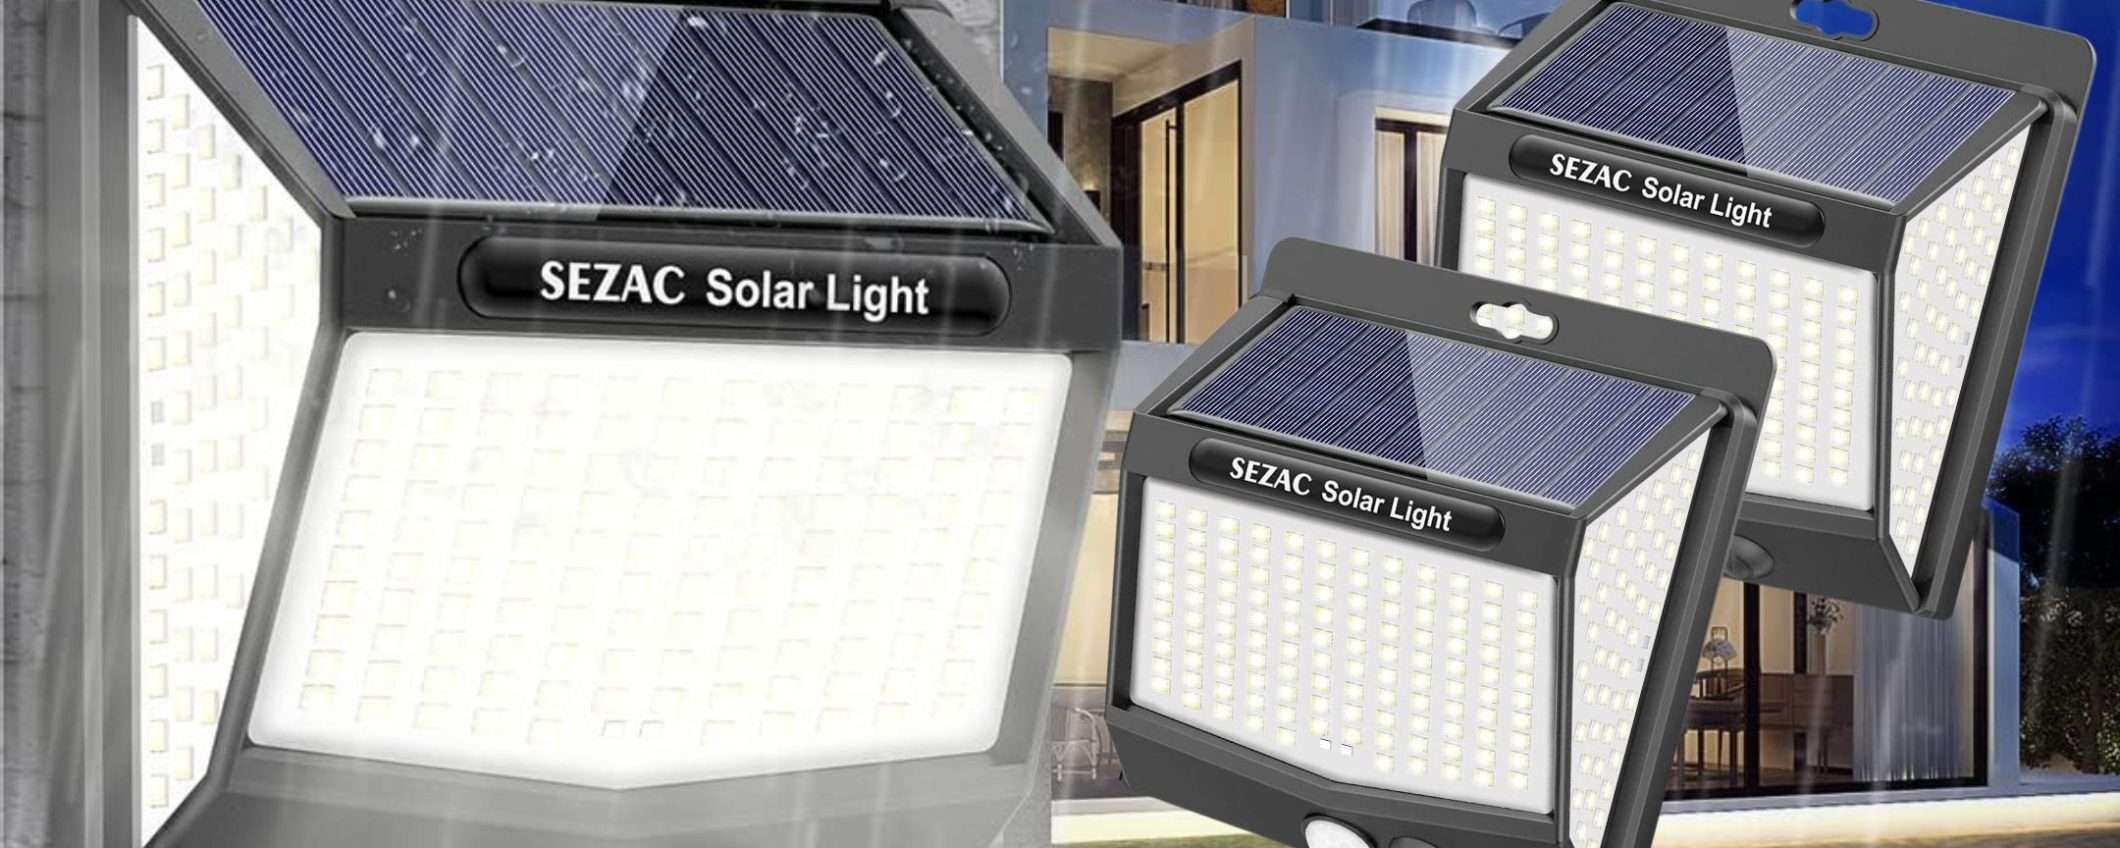 Faro solare 218 LED a 5,35€ su Amazon: illumina GRATIS ovunque (promo WOW)